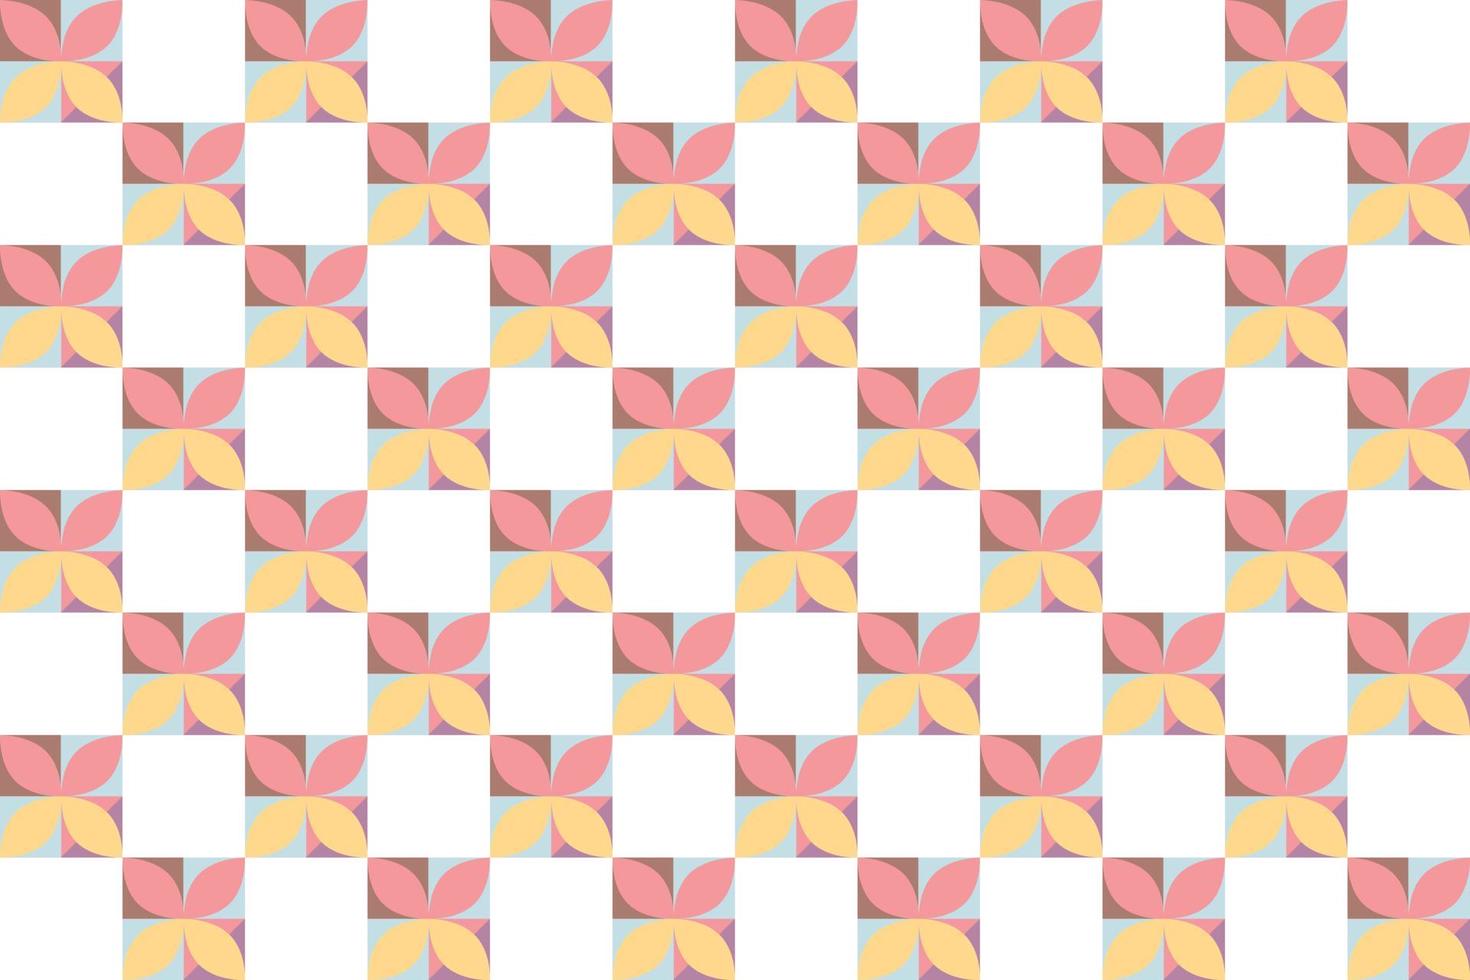 o tecido com padrão xadrez é um multiquadrado dentro do padrão xadrez com várias cores, onde um único xadrez vetor